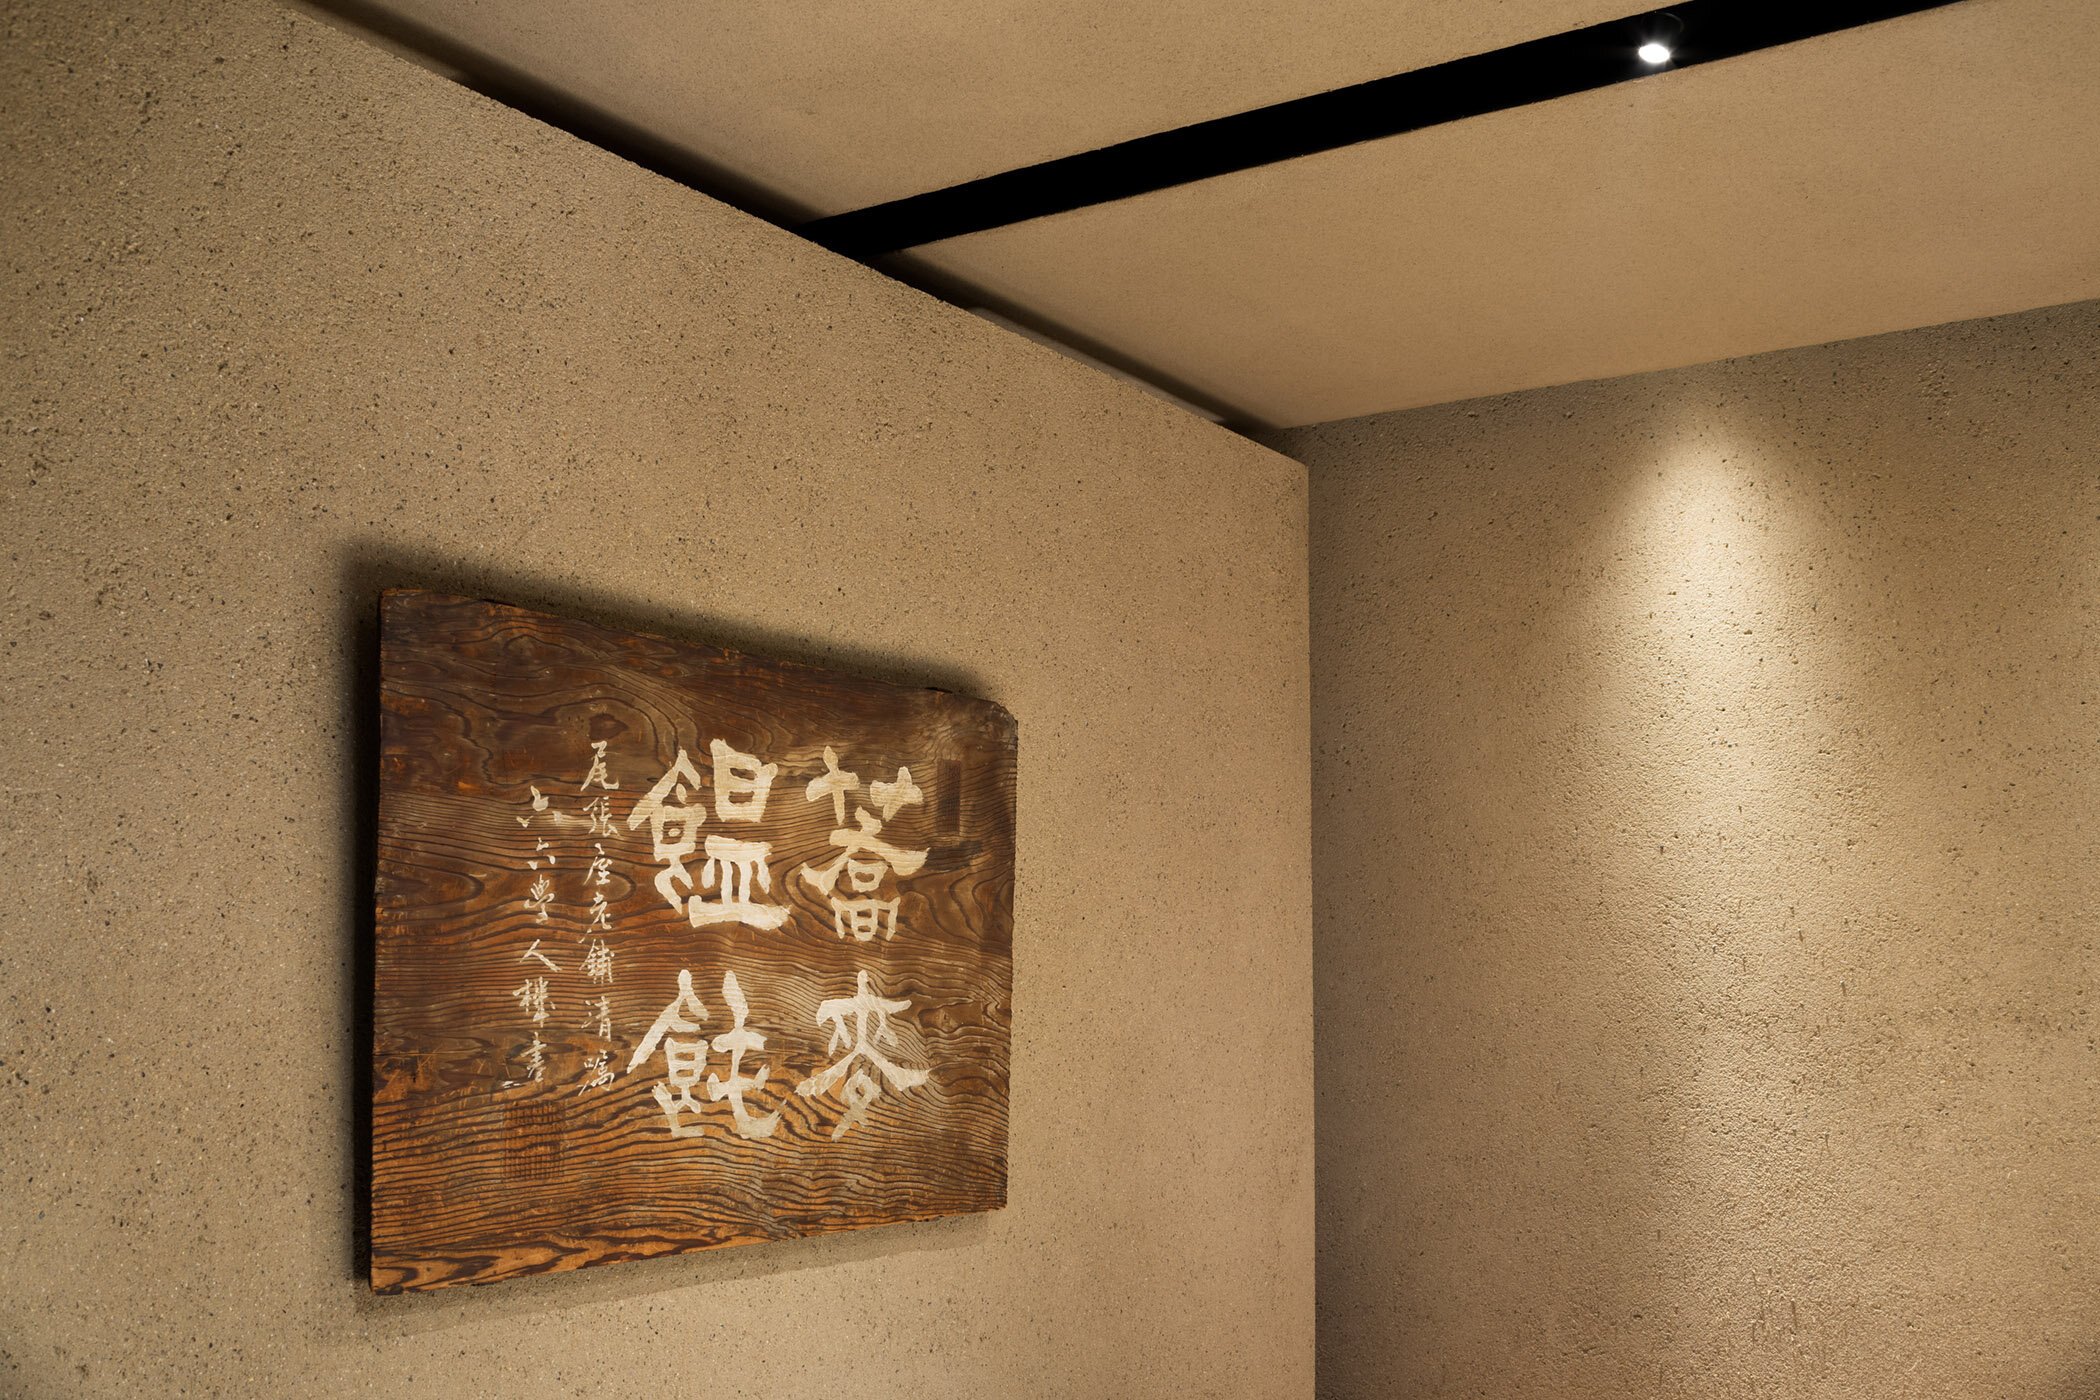  柳原照弘 Teruhiro Yanagihara Studioがインテリアデザインを手掛けた京都の尾張屋本店 菓子処。歴史あるサインを壁に設けた 